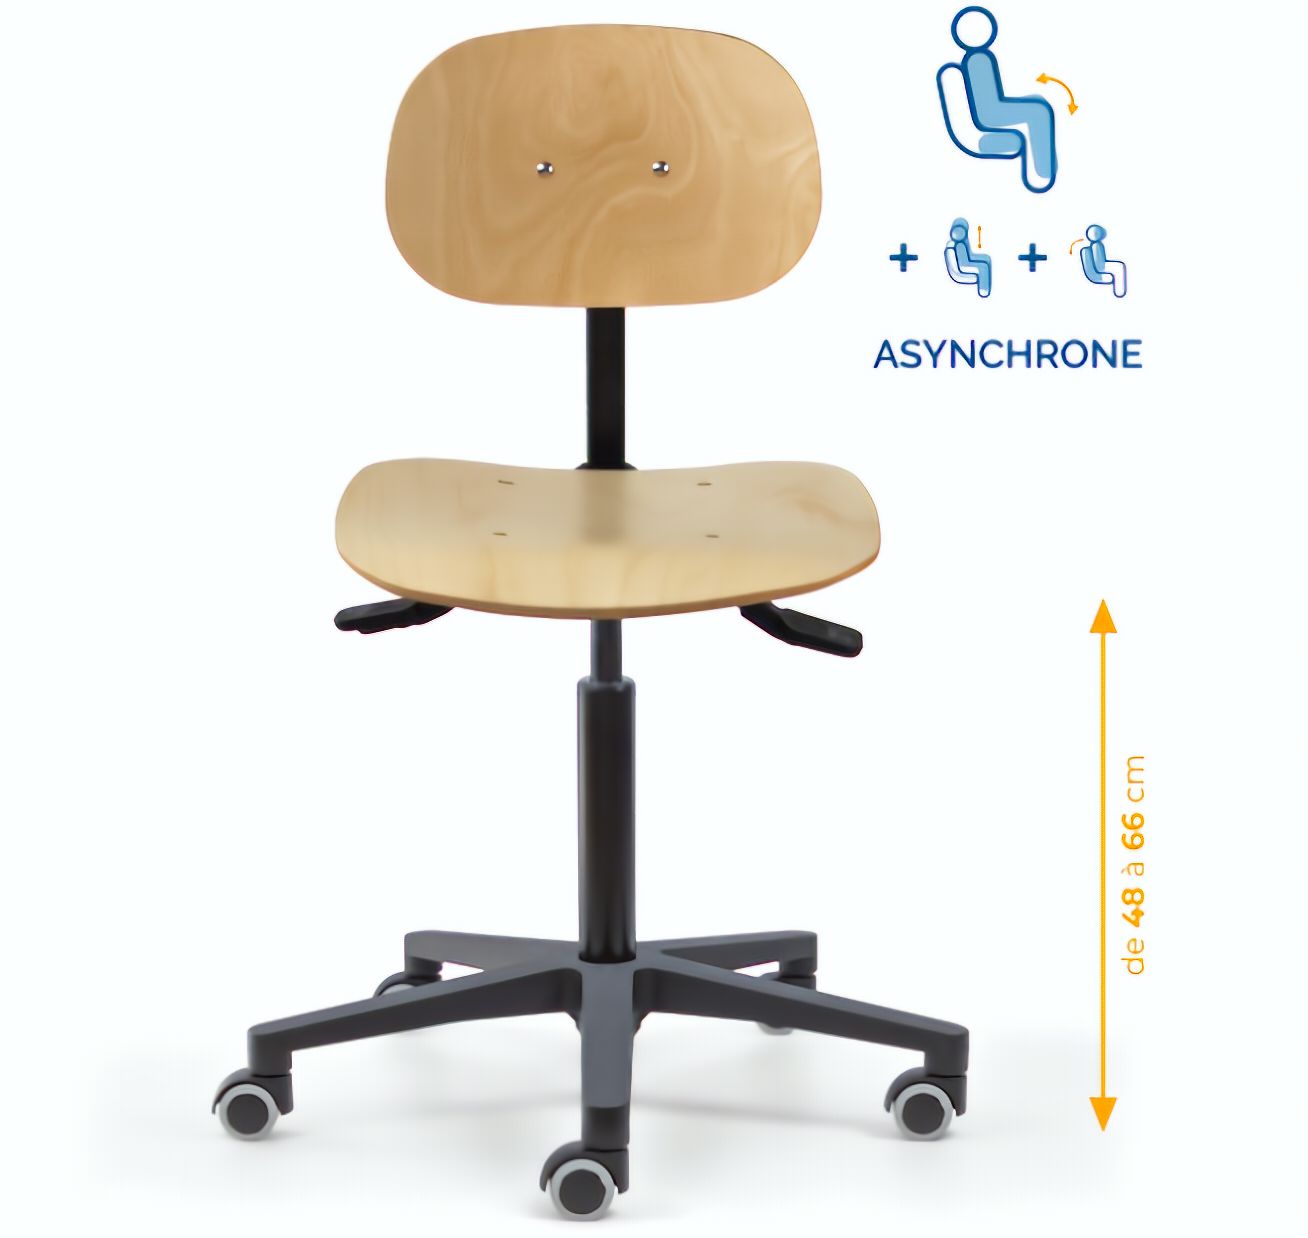 Chaise atelier bois, Chaise d'atelier en bois, chaise atelier en bois ergonomique, chaise atelier asynchrone en bois, chaise d'atelier professionnel, mobilier de bureau, Besançon